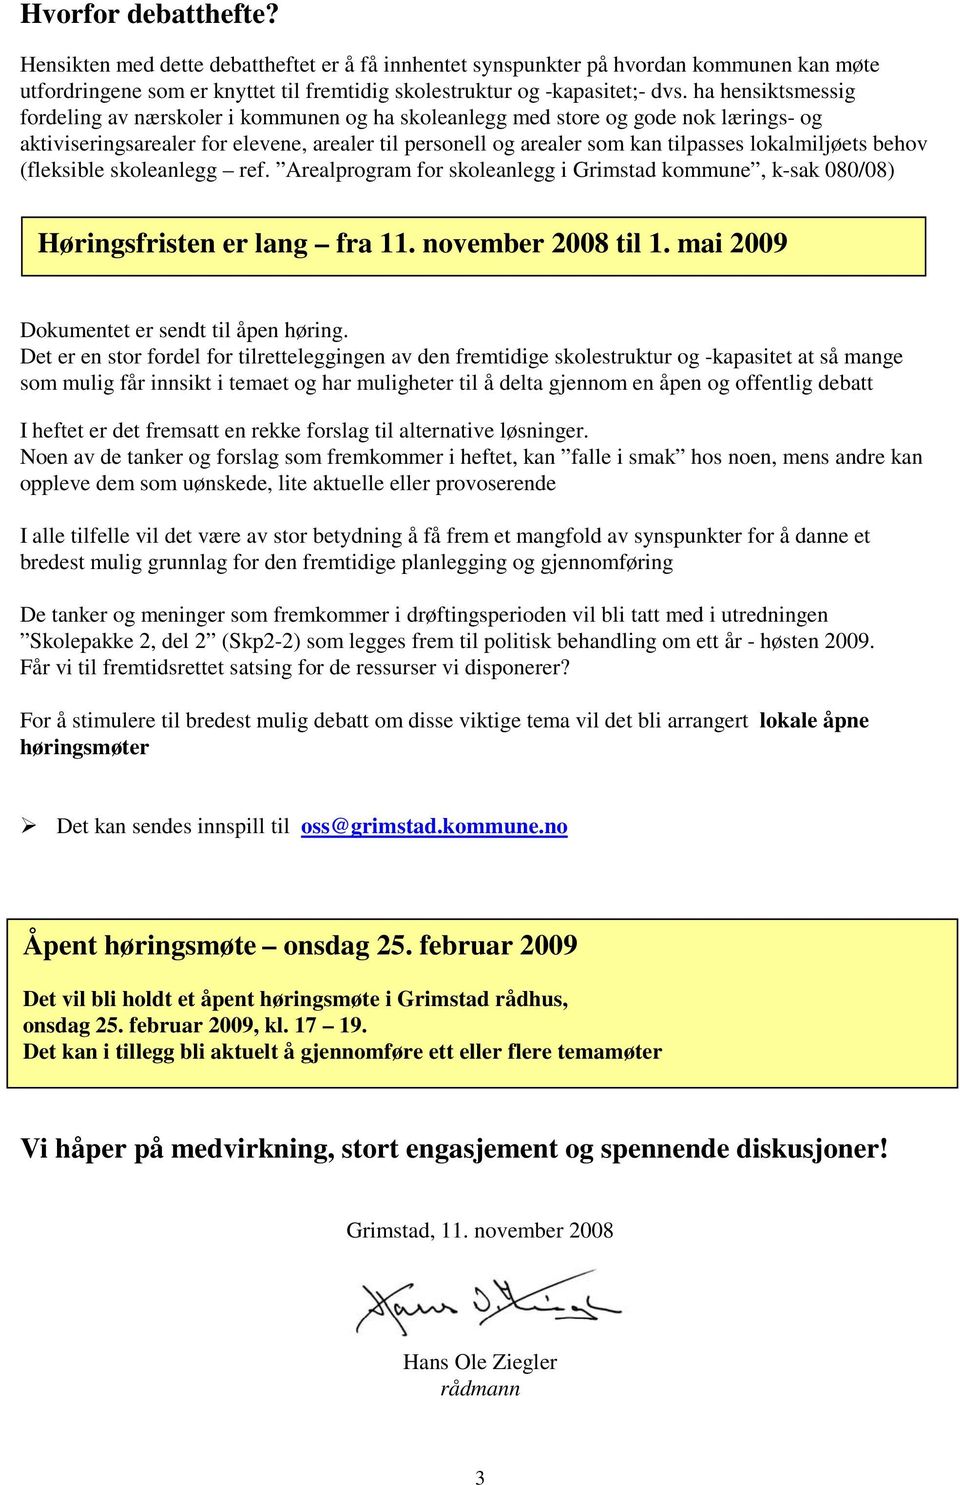 lokalmiljøets behov (fleksible skoleanlegg ref. Arealprogram for skoleanlegg i Grimstad kommune, k-sak 080/08) Høringsfristen er lang fra 11. november 2008 til 1.